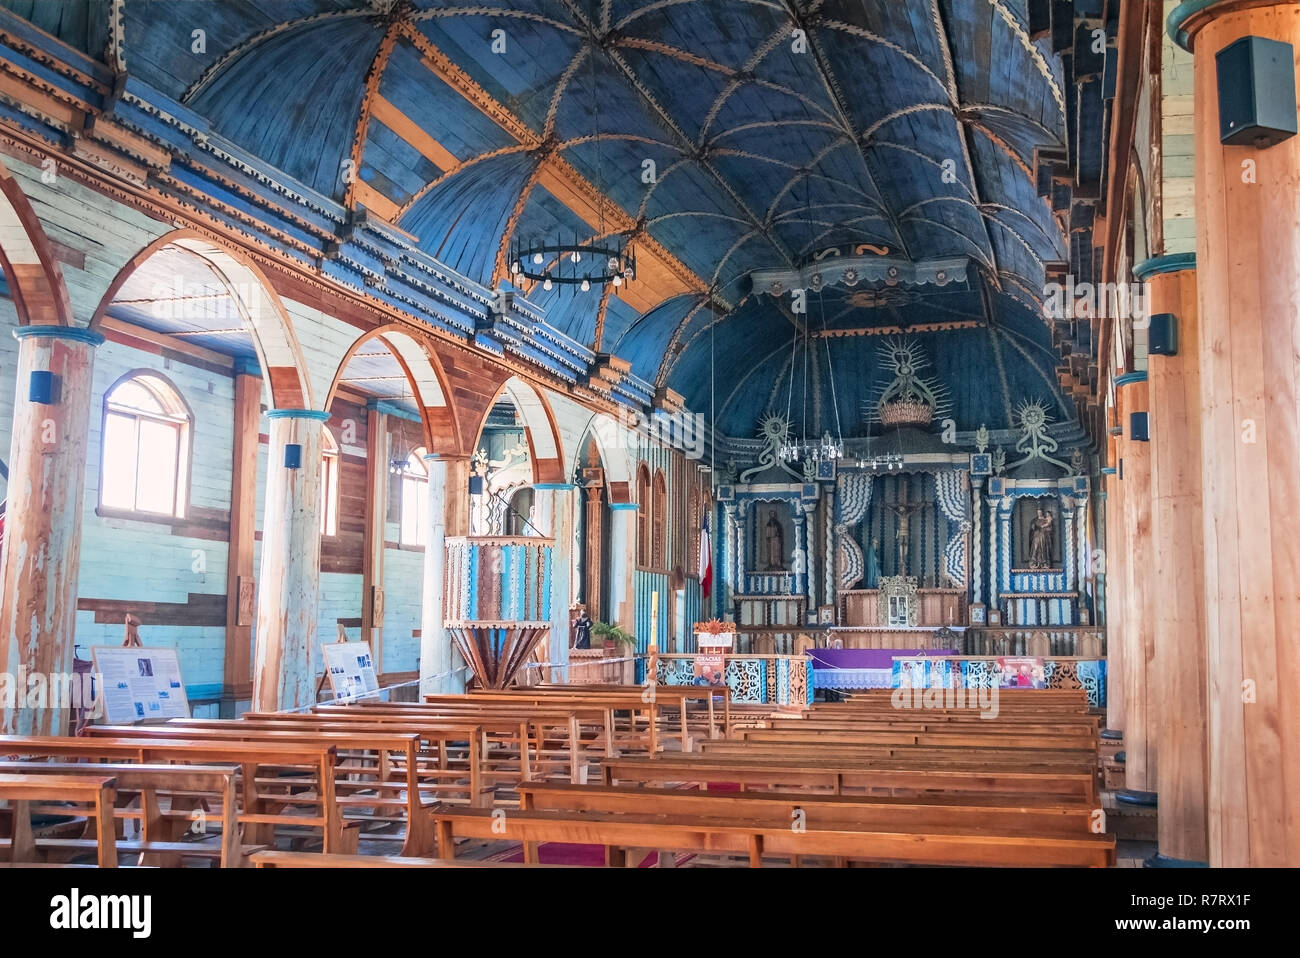 Church of Achao interior - Chiloe Island, Chile Stock Photo